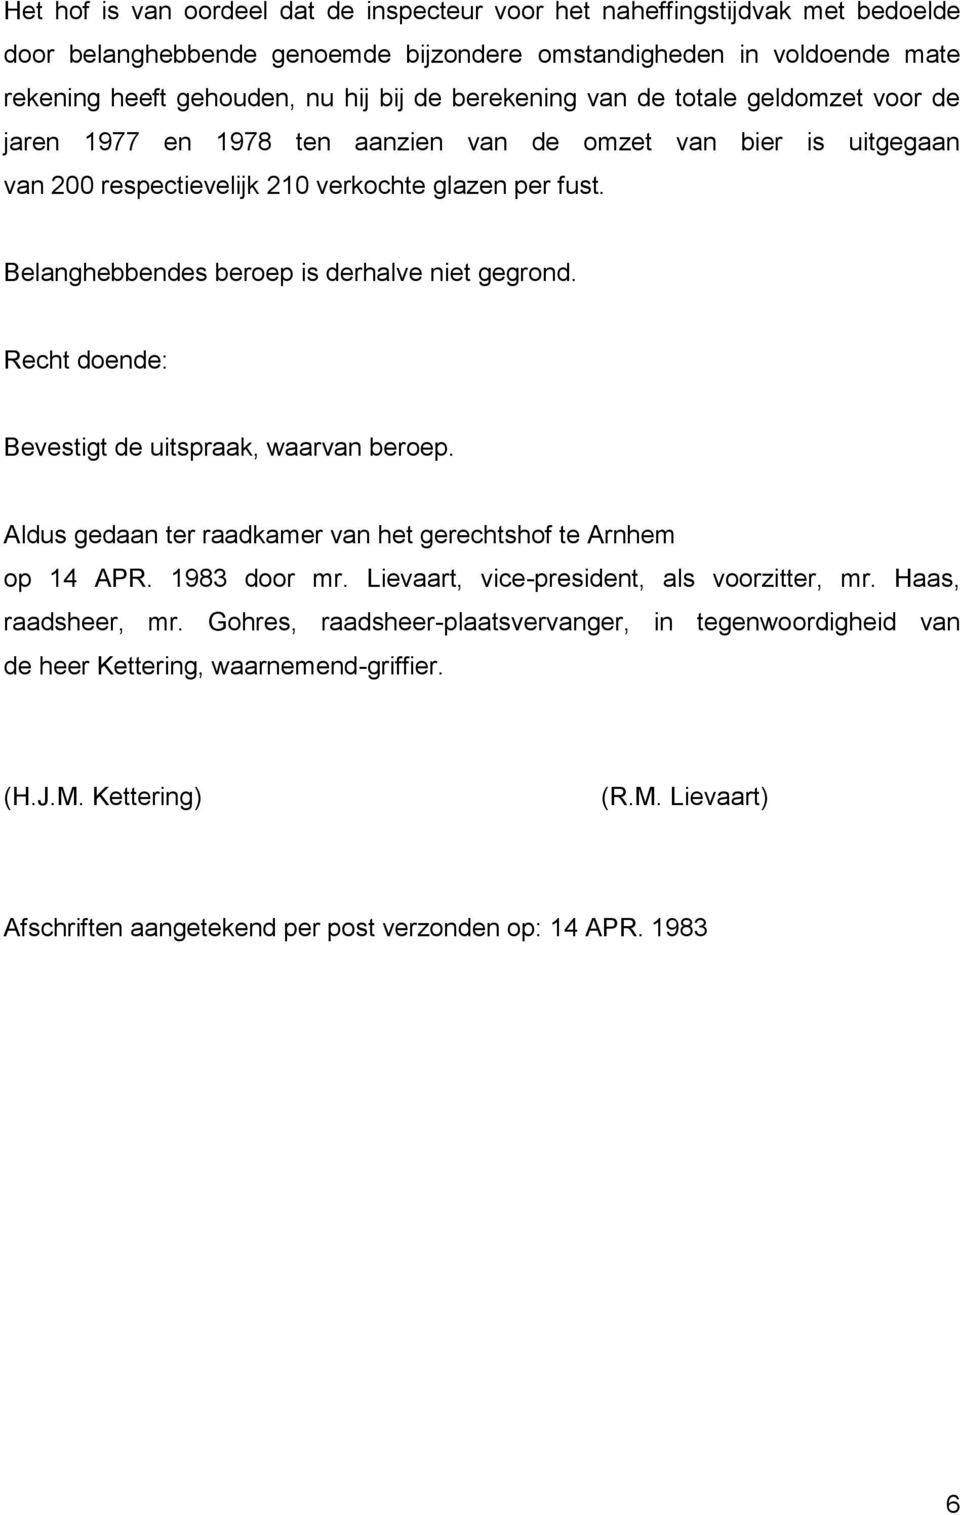 Belanghebbendes beroep is derhalve niet gegrond. Recht doende: Bevestigt de uitspraak, waarvan beroep. Aldus gedaan ter raadkamer van het gerechtshof te Arnhem op 14 APR. 1983 door mr.